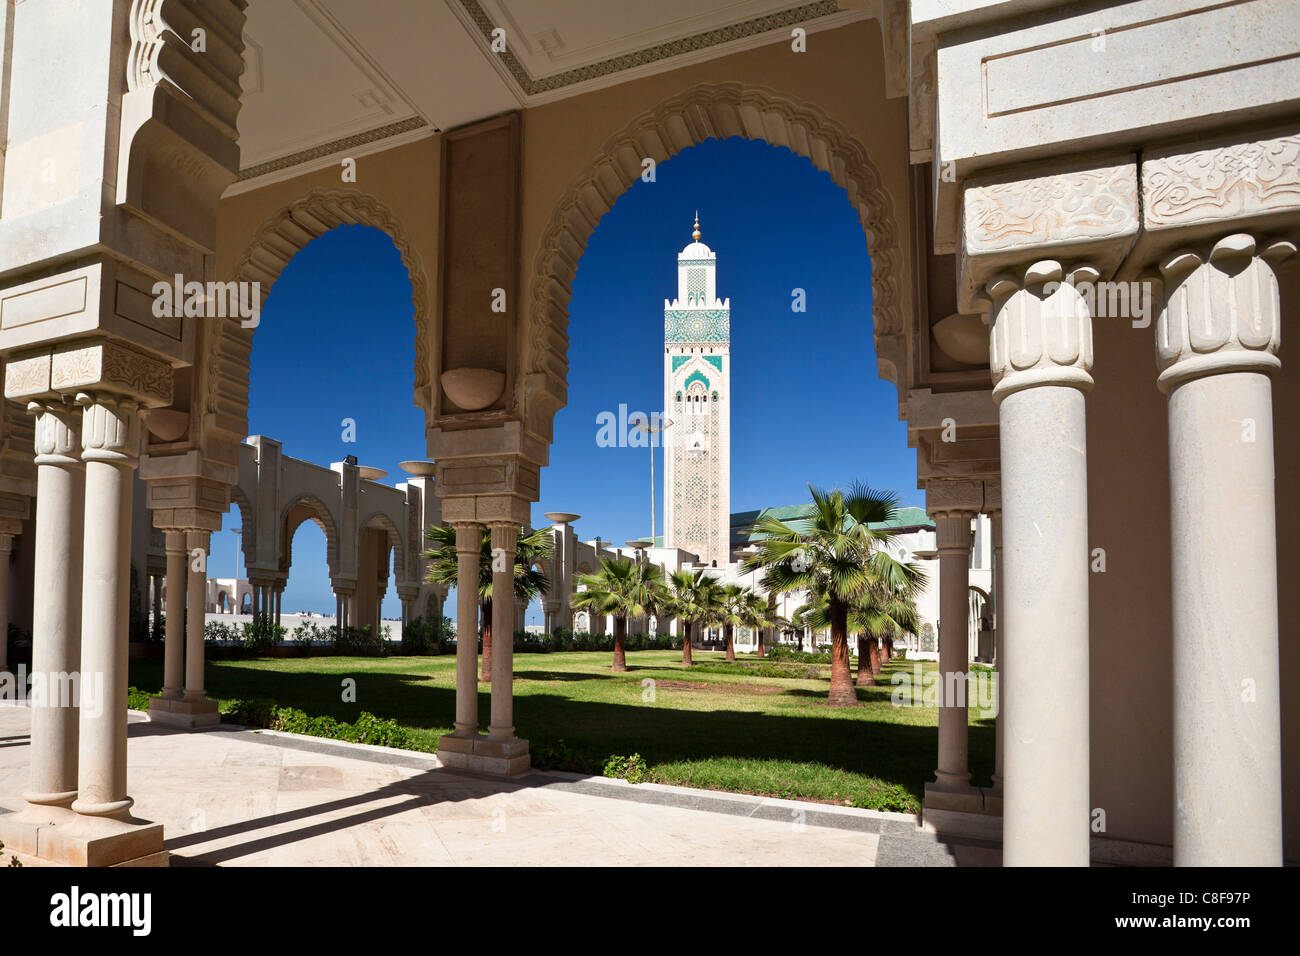 Le Maroc, l'Afrique du Nord, d'Afrique, Casablanca, Hassan II, mosquée, plus haut, haut, minaret, 210 ms Banque D'Images